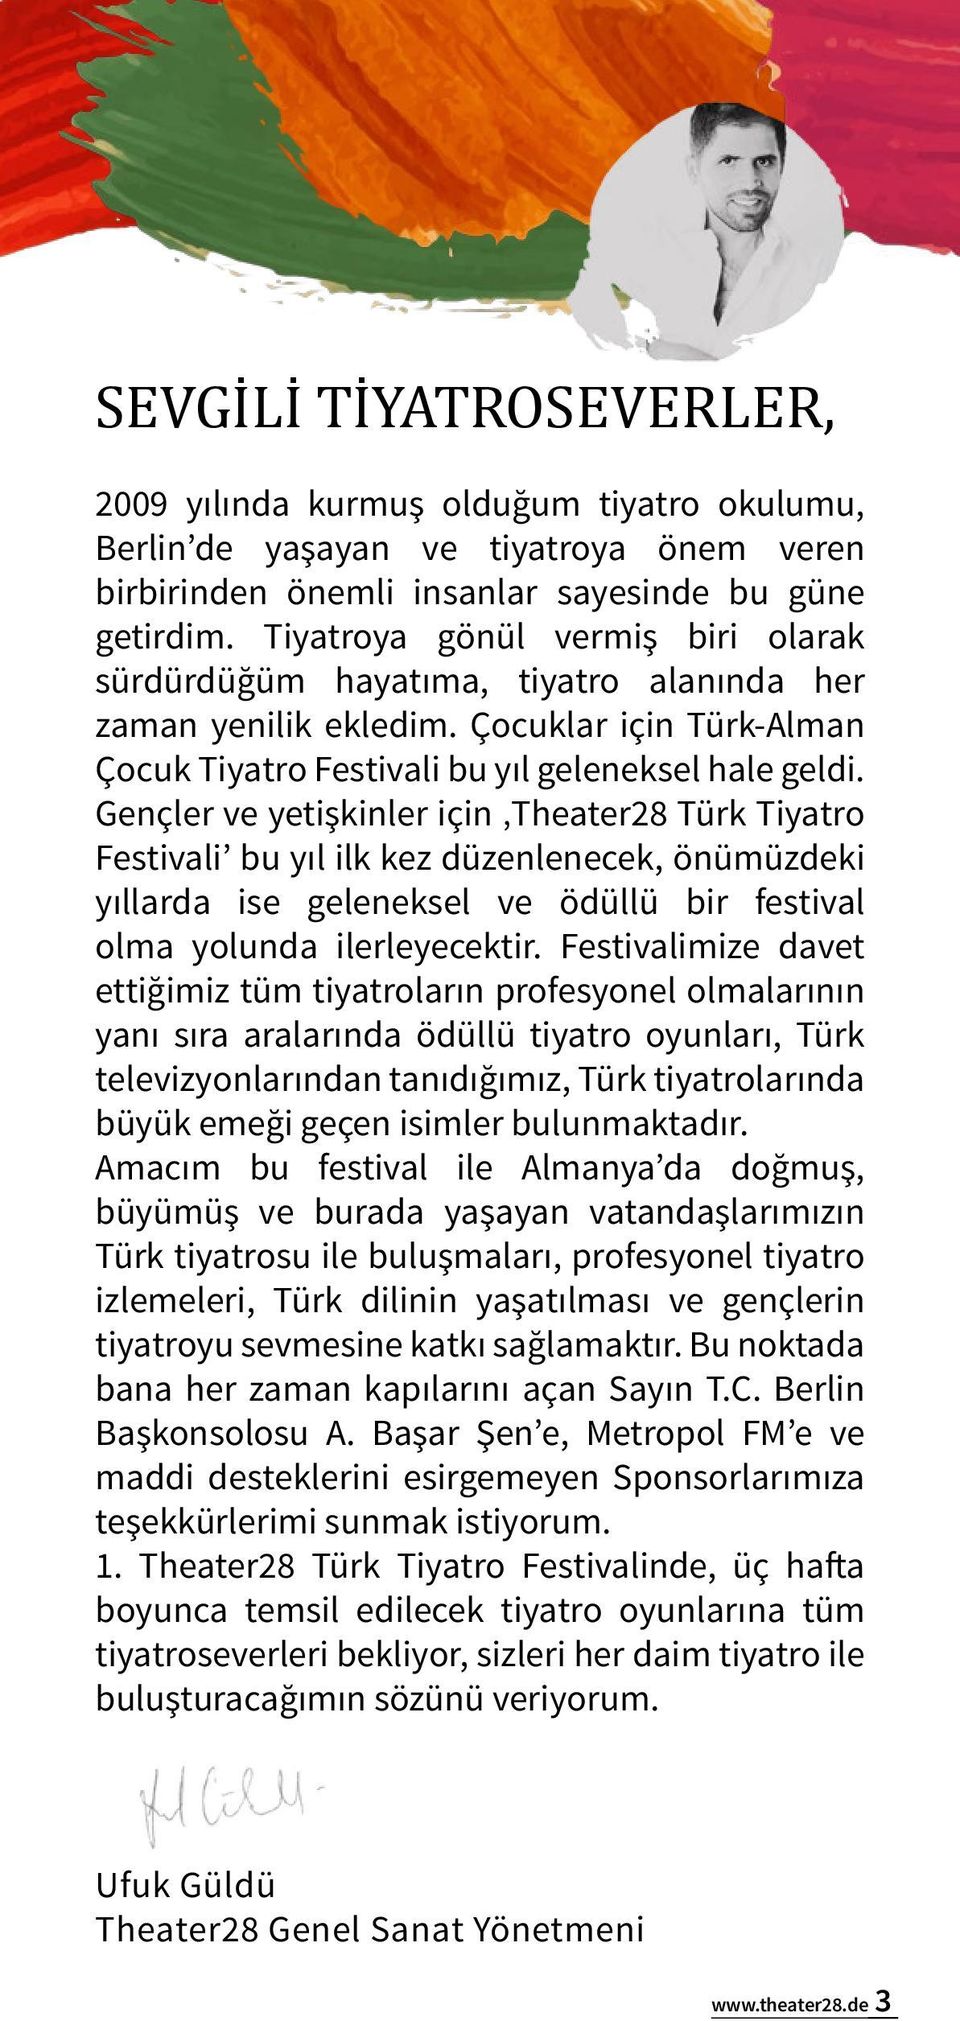 Gençler ve yetişkinler için Theater28 Türk Tiyatro Festivali bu yıl ilk kez düzenlenecek, önümüzdeki yıllarda ise geleneksel ve ödüllü bir festival olma yolunda ilerleyecektir.